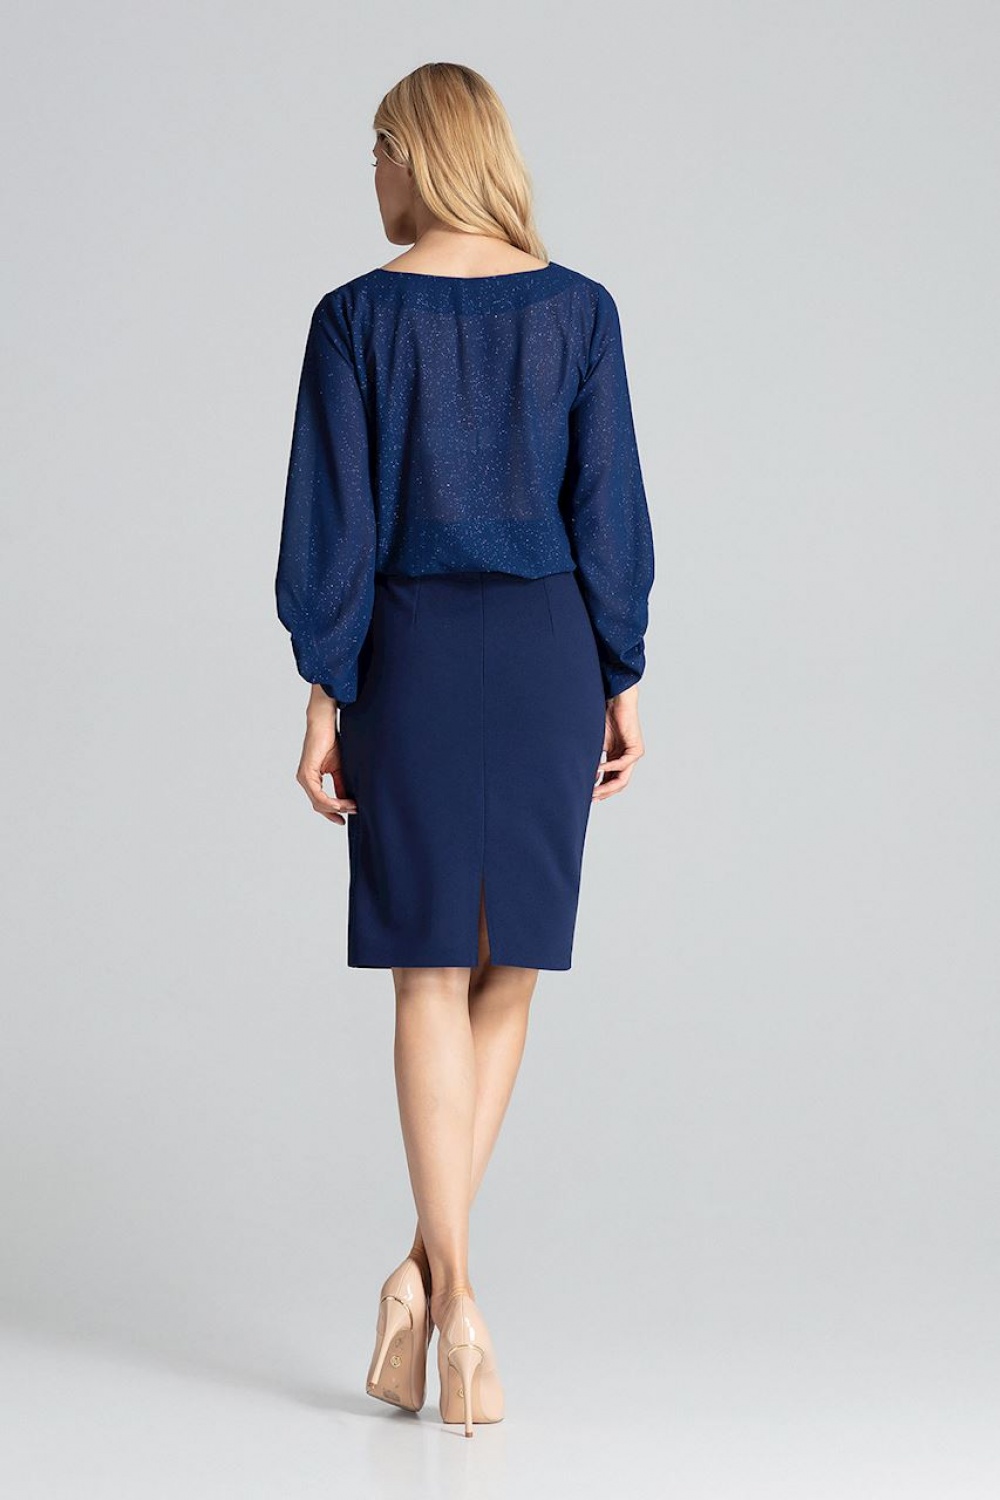  Skirt model 138289 Figl  navy blue